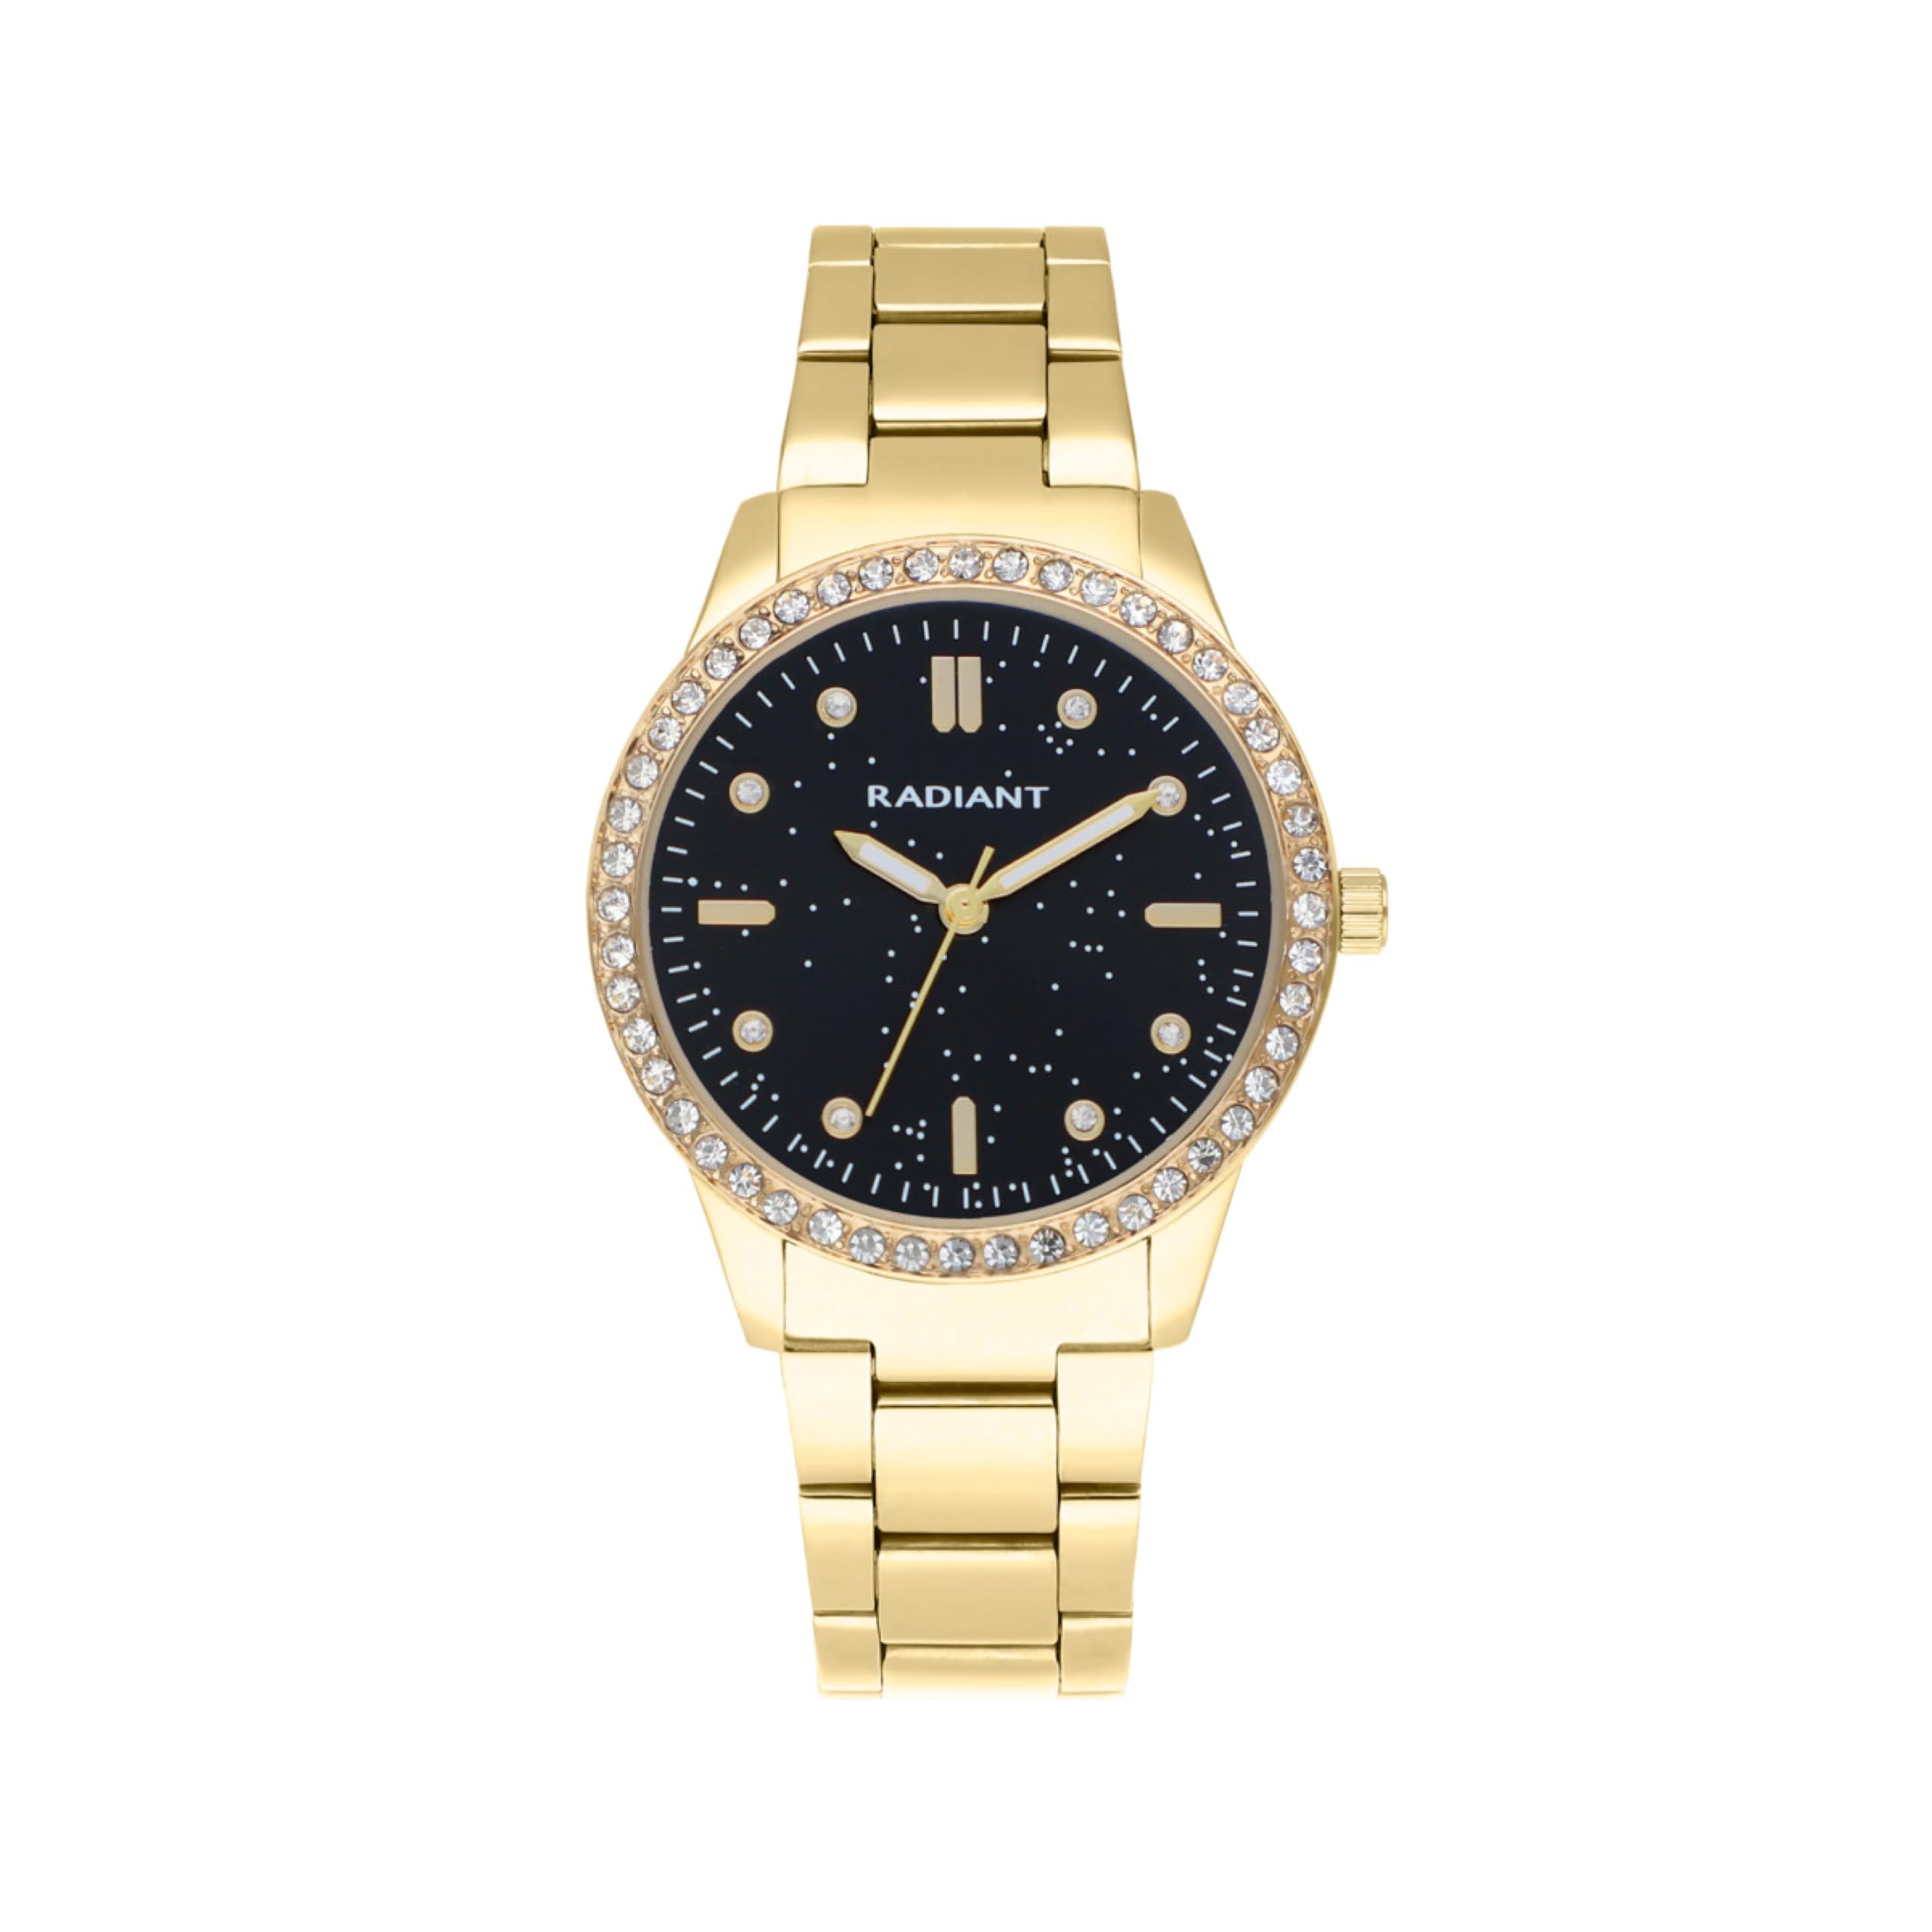 Radiant - Universe Kollektion - Analog Quarzuhr - Armbanduhr für Frauen. Silbernes Armbanduhr mit blauem Zifferblatt, silbernem Armband und glänzenden Steinen auf der Lünette. 3ATM.